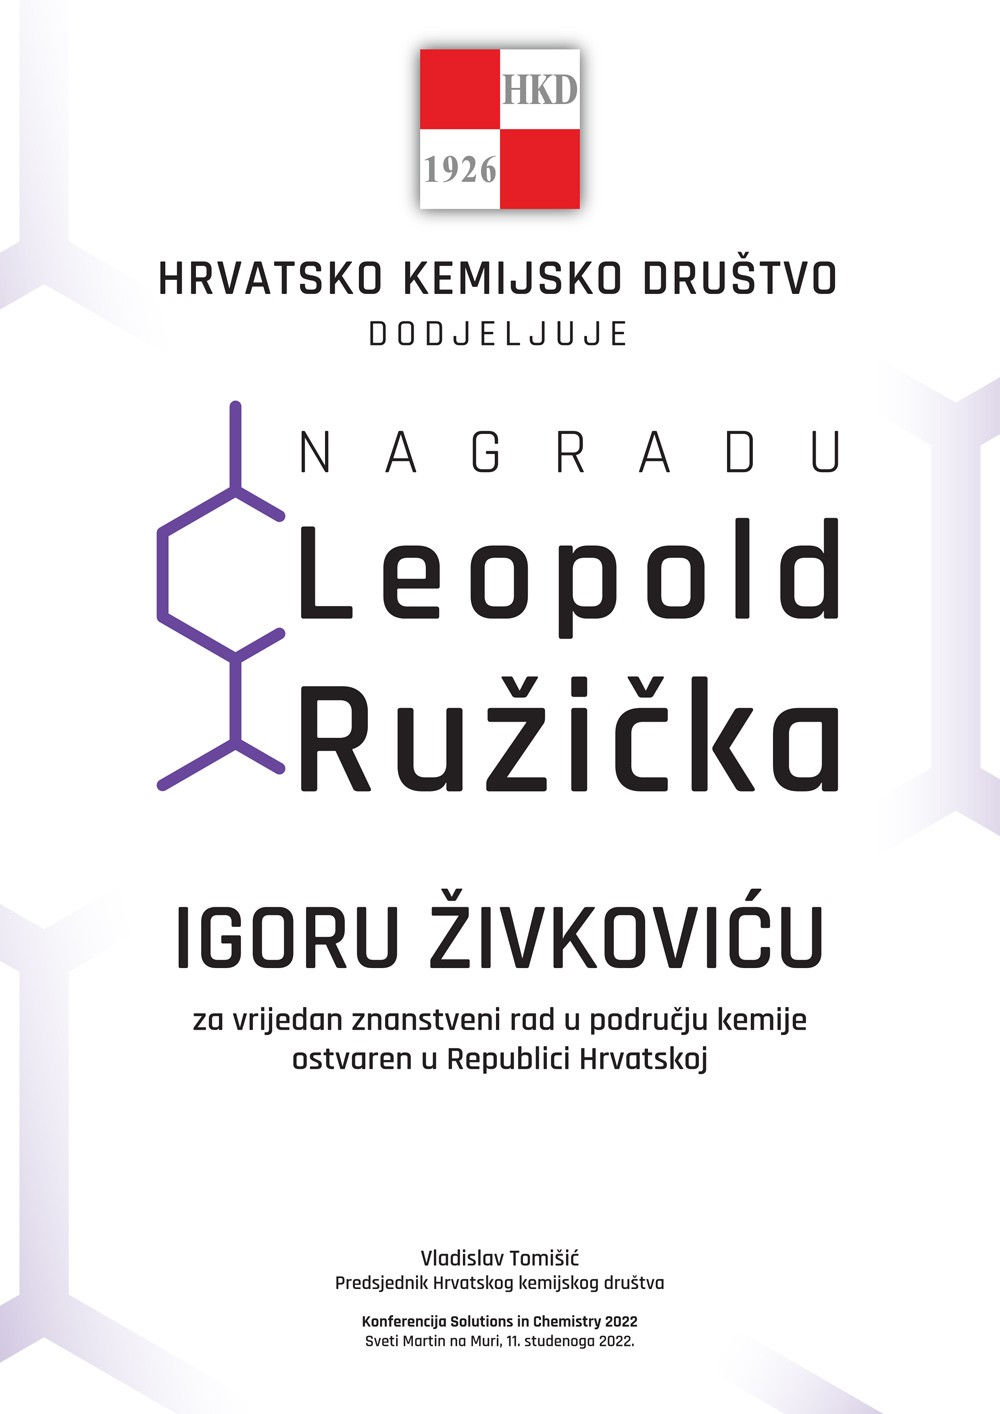 Nagrada Leopold Ružička